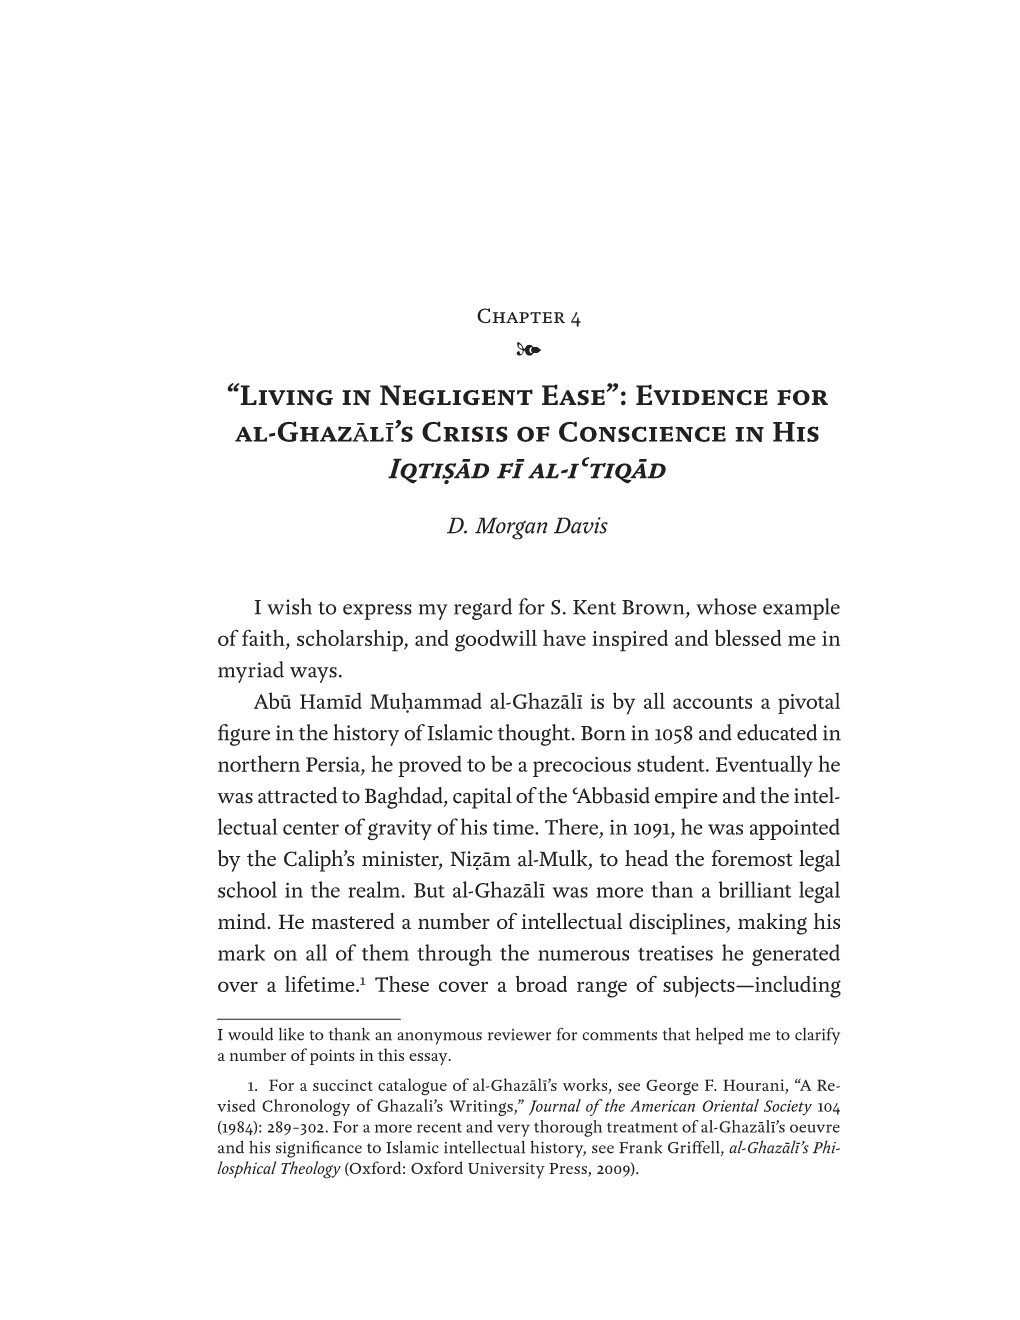 Evidence for Al-Ghazālī's Crisis of Conscience in His Iqtiṣād Fī Al-Iʿtiqād